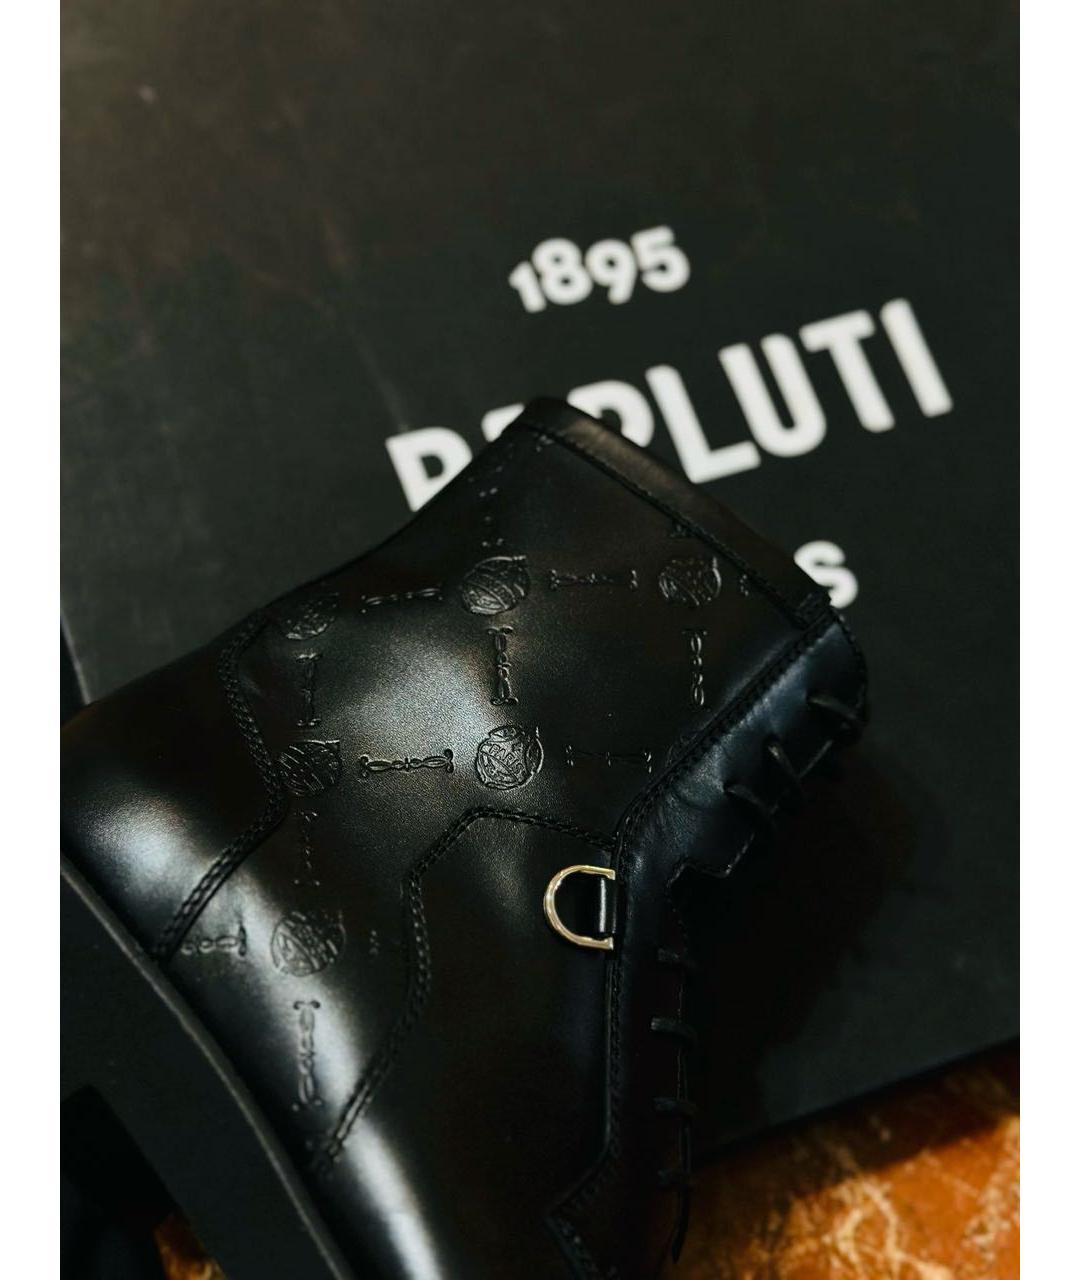 BERLUTI Черные кожаные высокие ботинки, фото 8